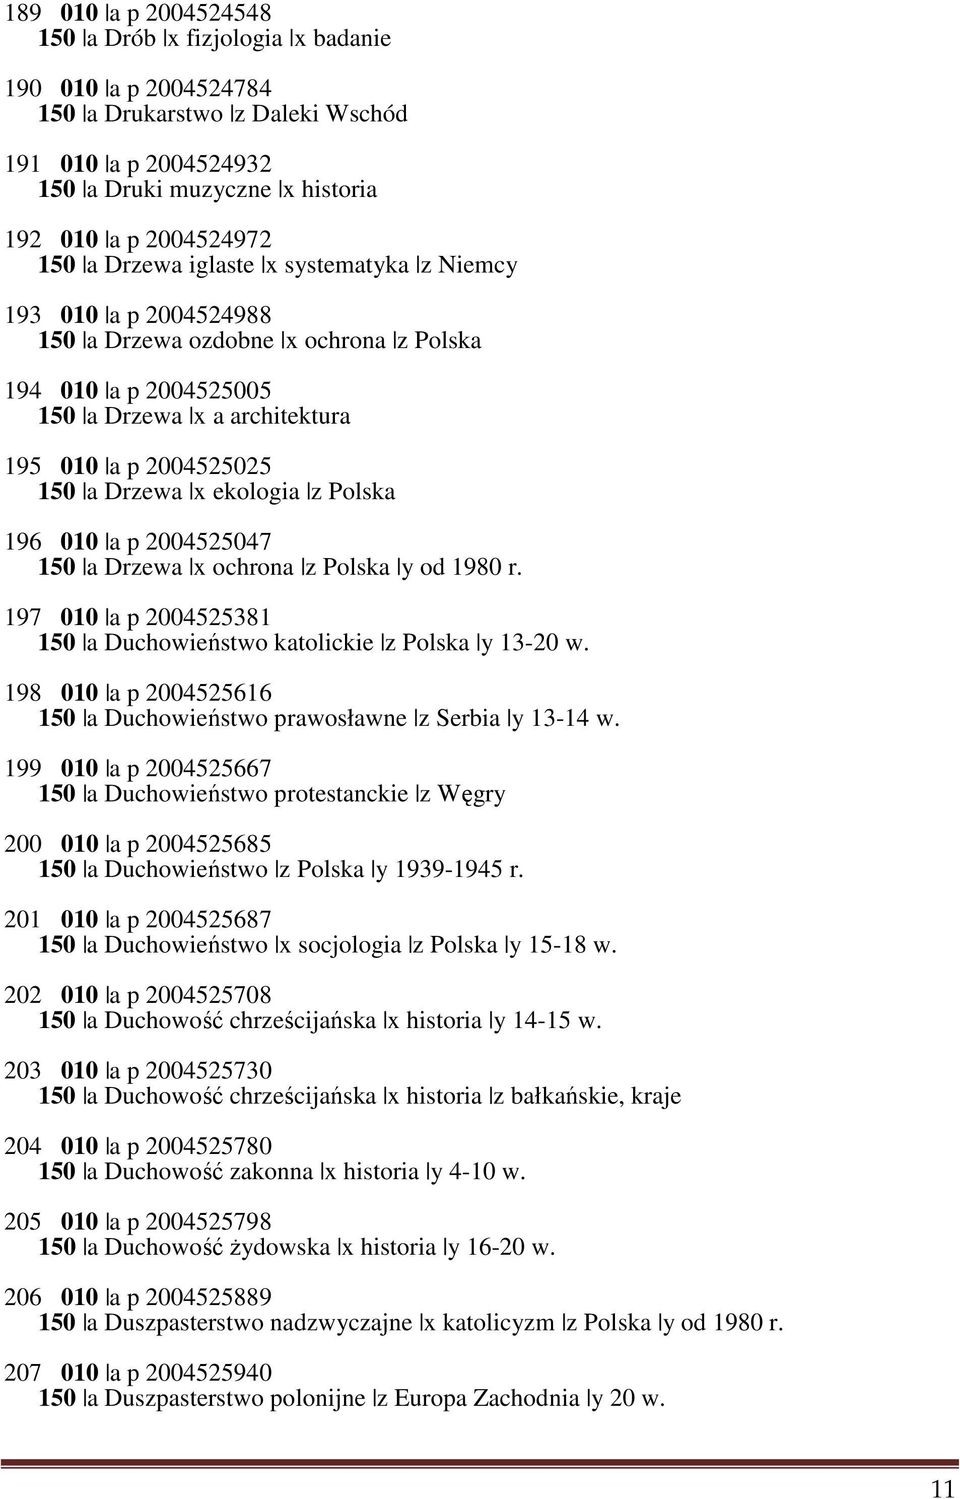 ekologia z Polska 196 010 a p 2004525047 150 a Drzewa x ochrona z Polska y od 1980 r. 197 010 a p 2004525381 150 a Duchowieństwo katolickie z Polska y 13-20 w.